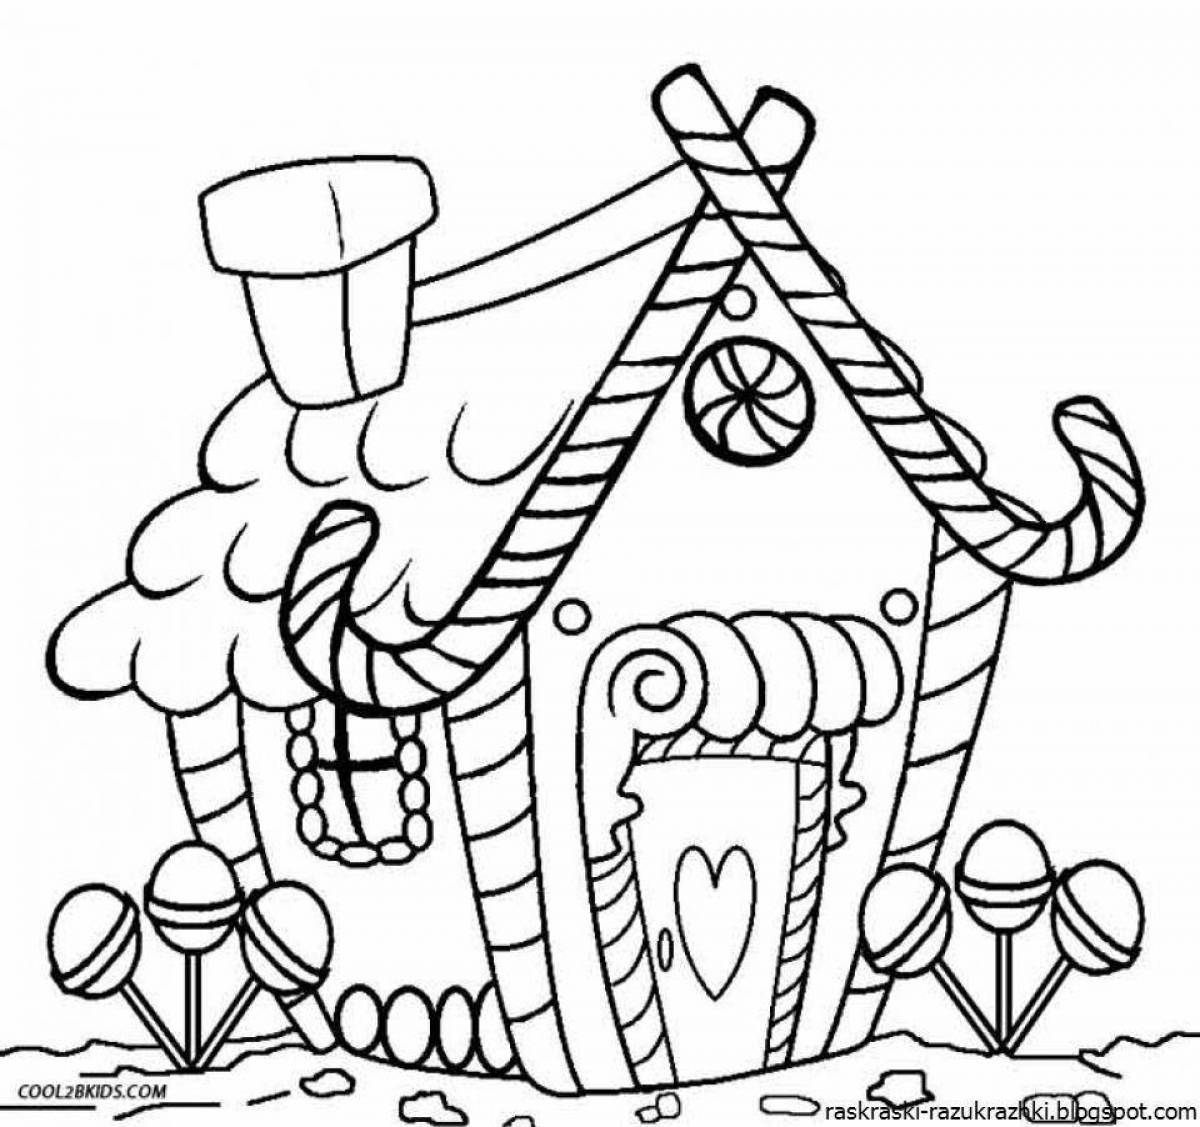 Увлекательная раскраска сказочный домик